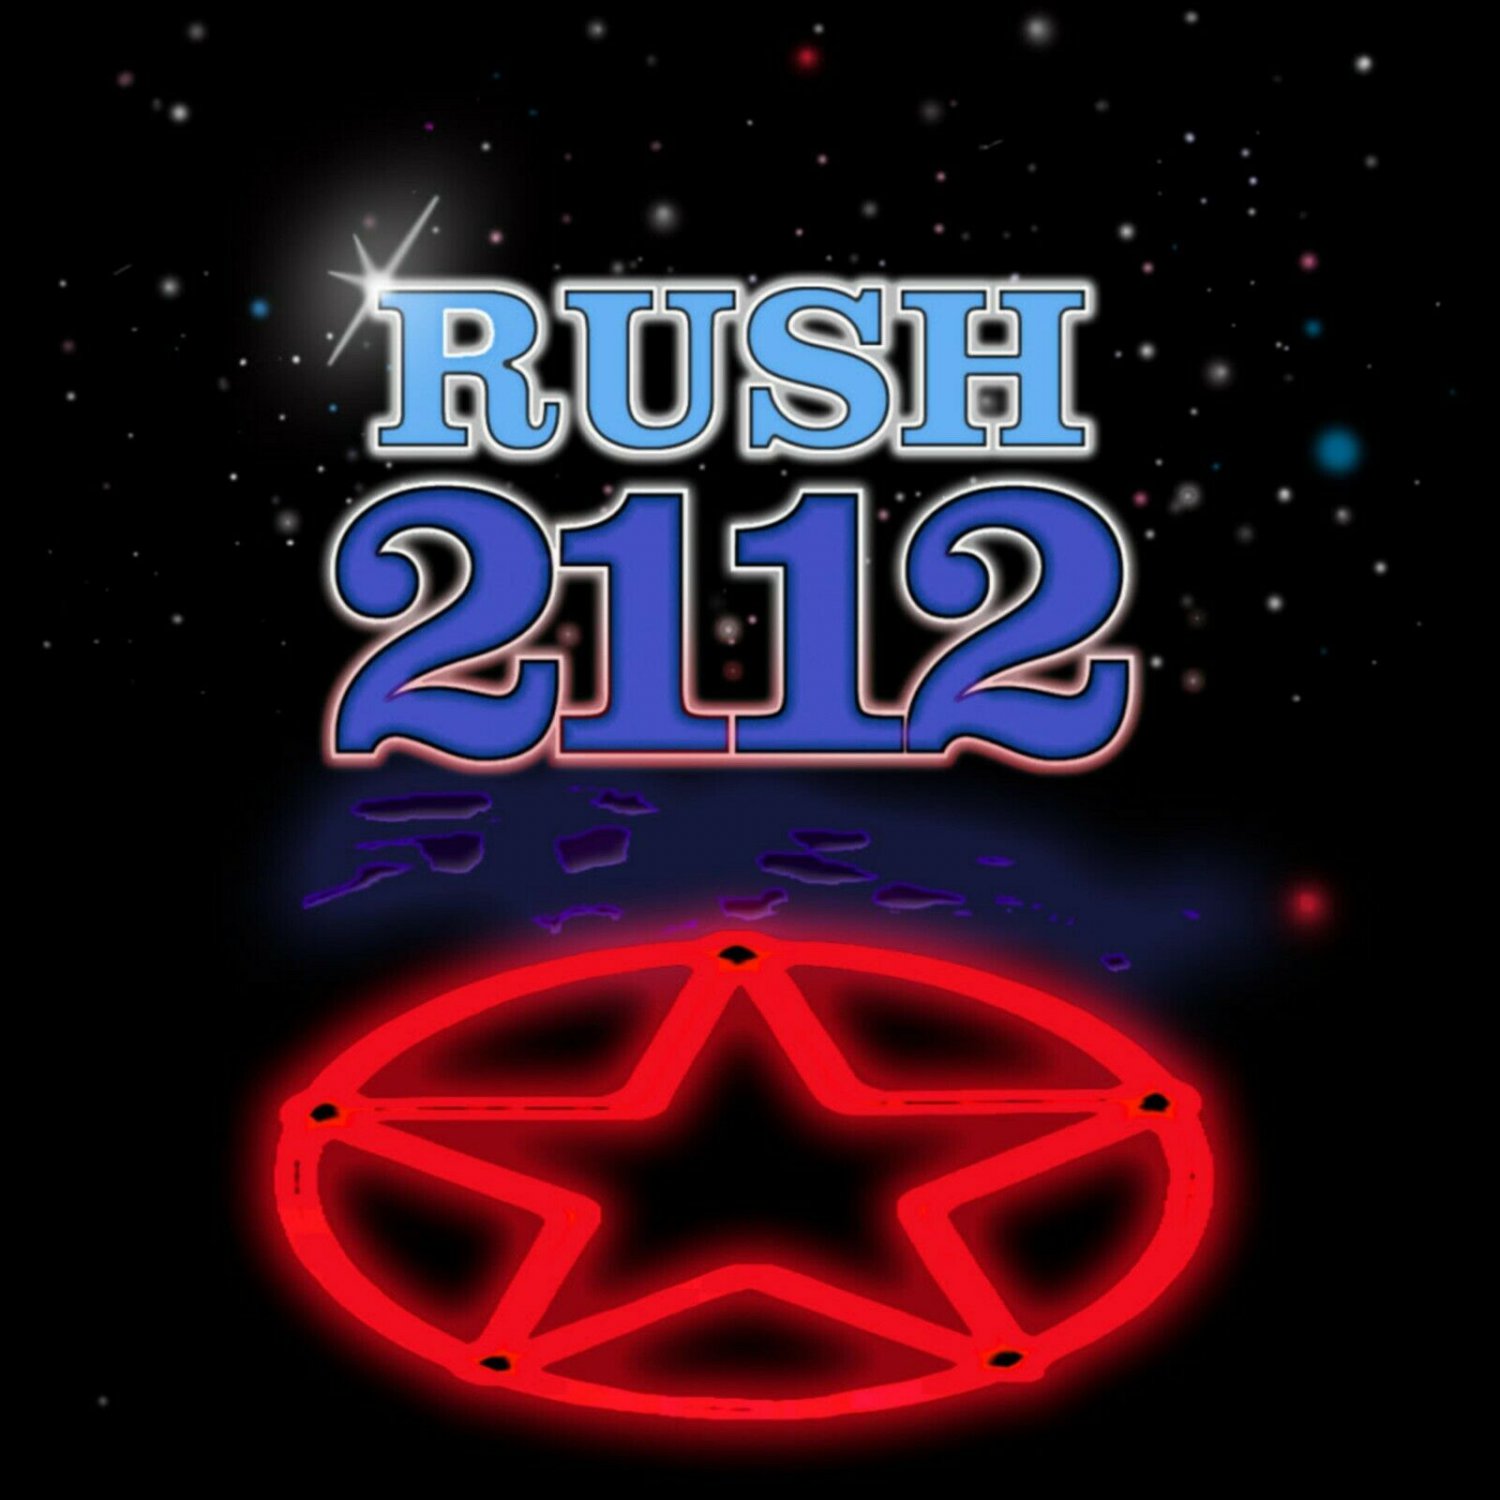 2112 rush full album